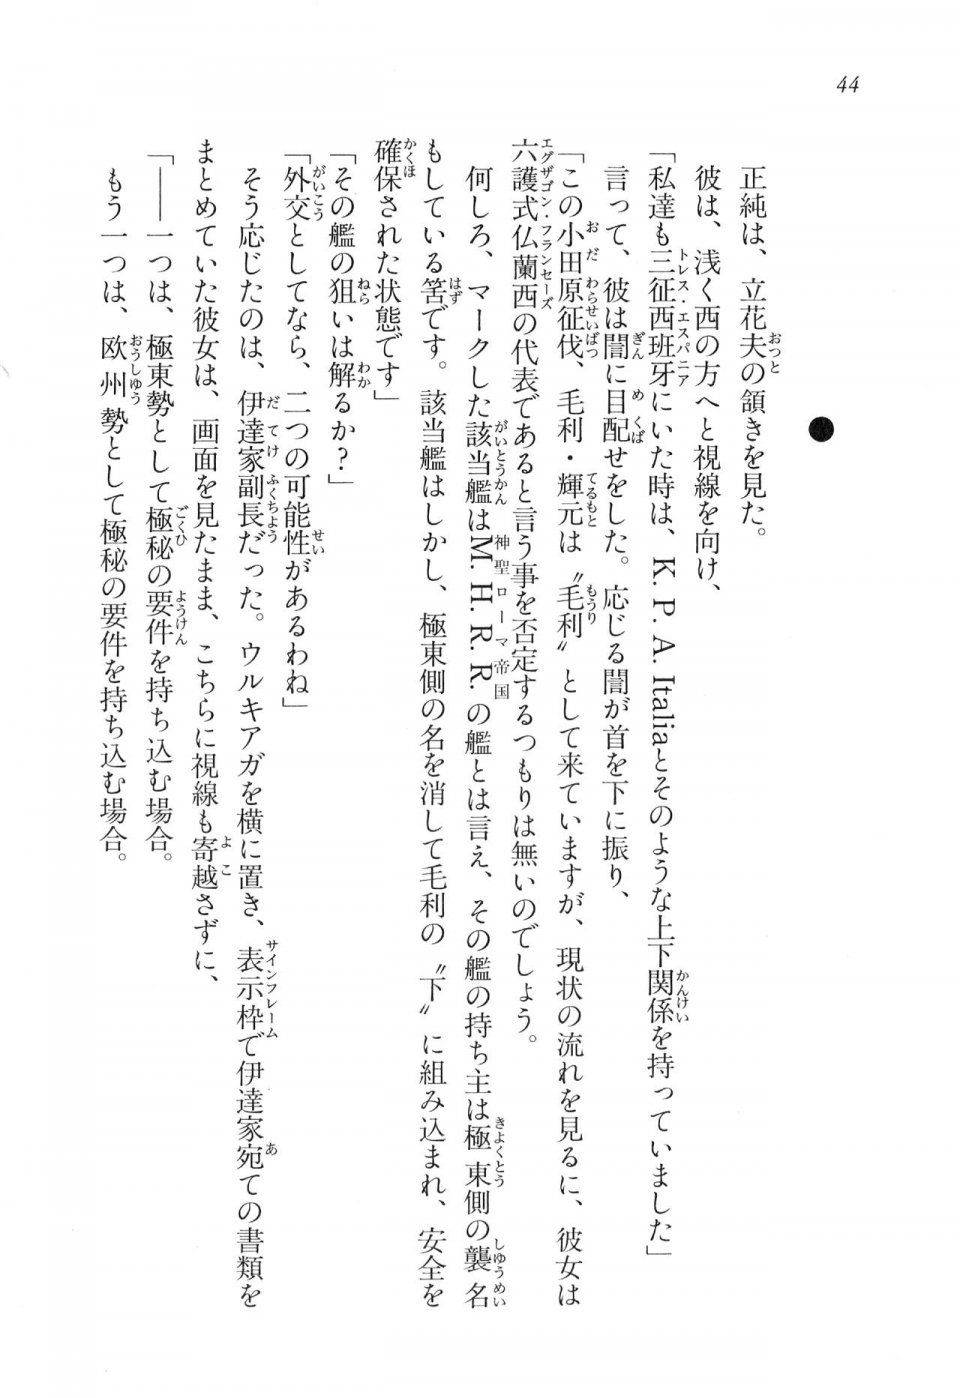 Kyoukai Senjou no Horizon LN Vol 16(7A) - Photo #44